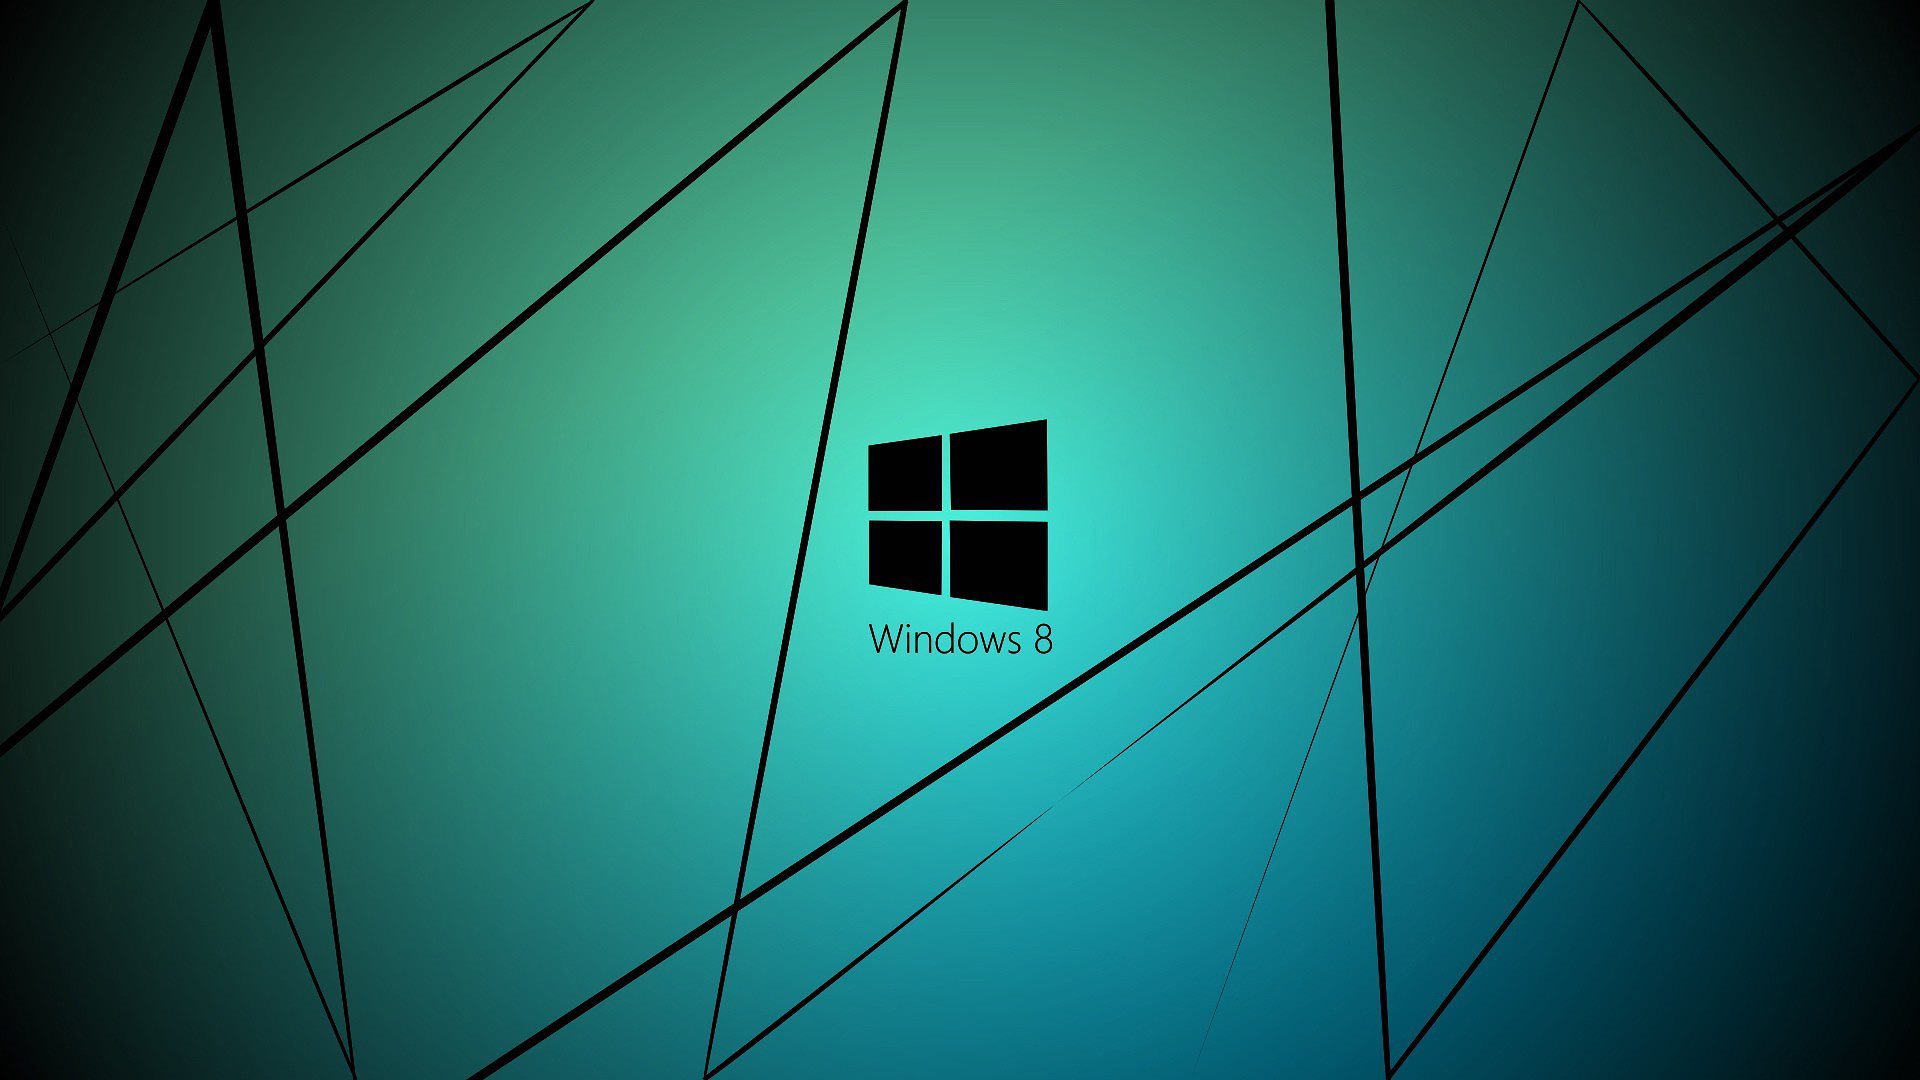 ダウンロード画像 ロゴ Windows8 セイバー 画面の解像度 19x1080 壁紙デスクトップ上